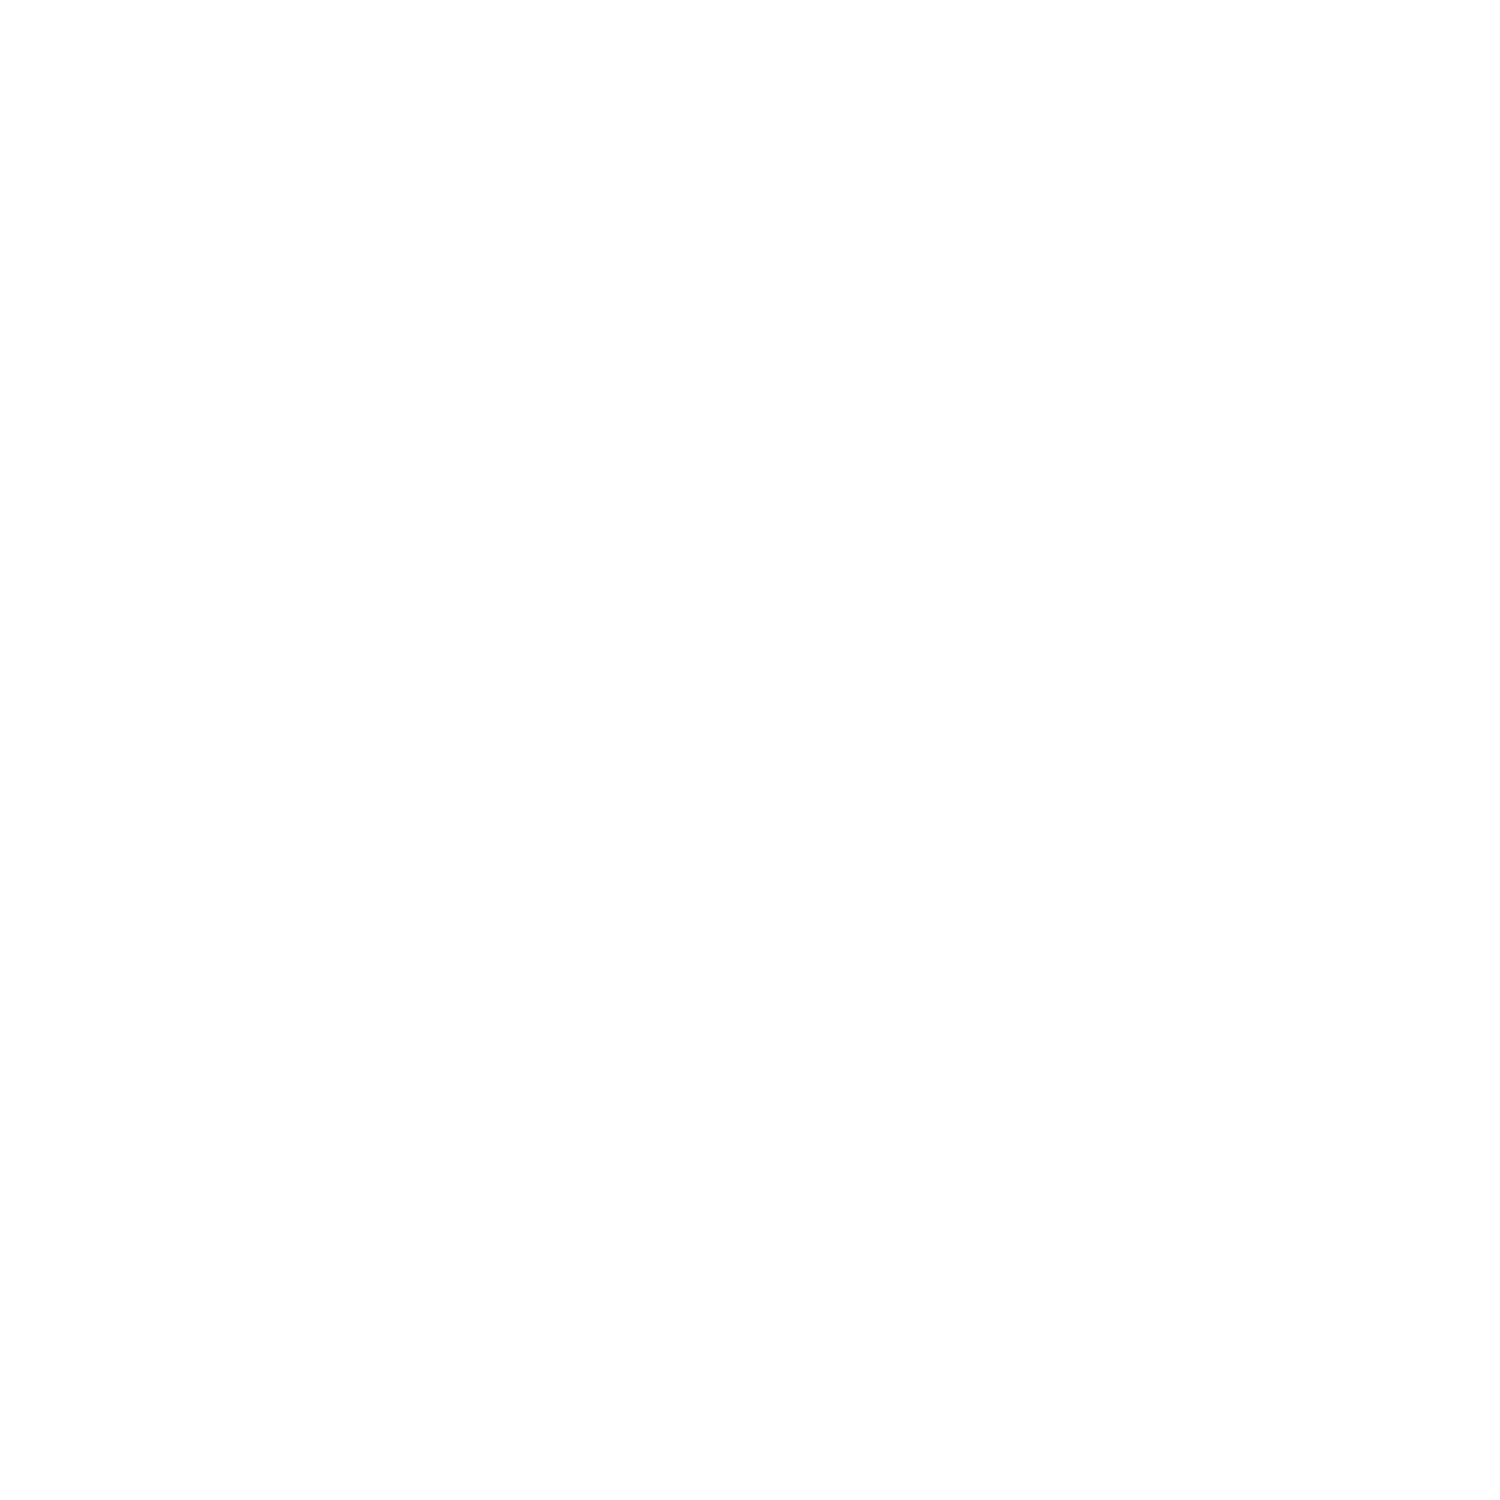 Jarvis-Street-01.png